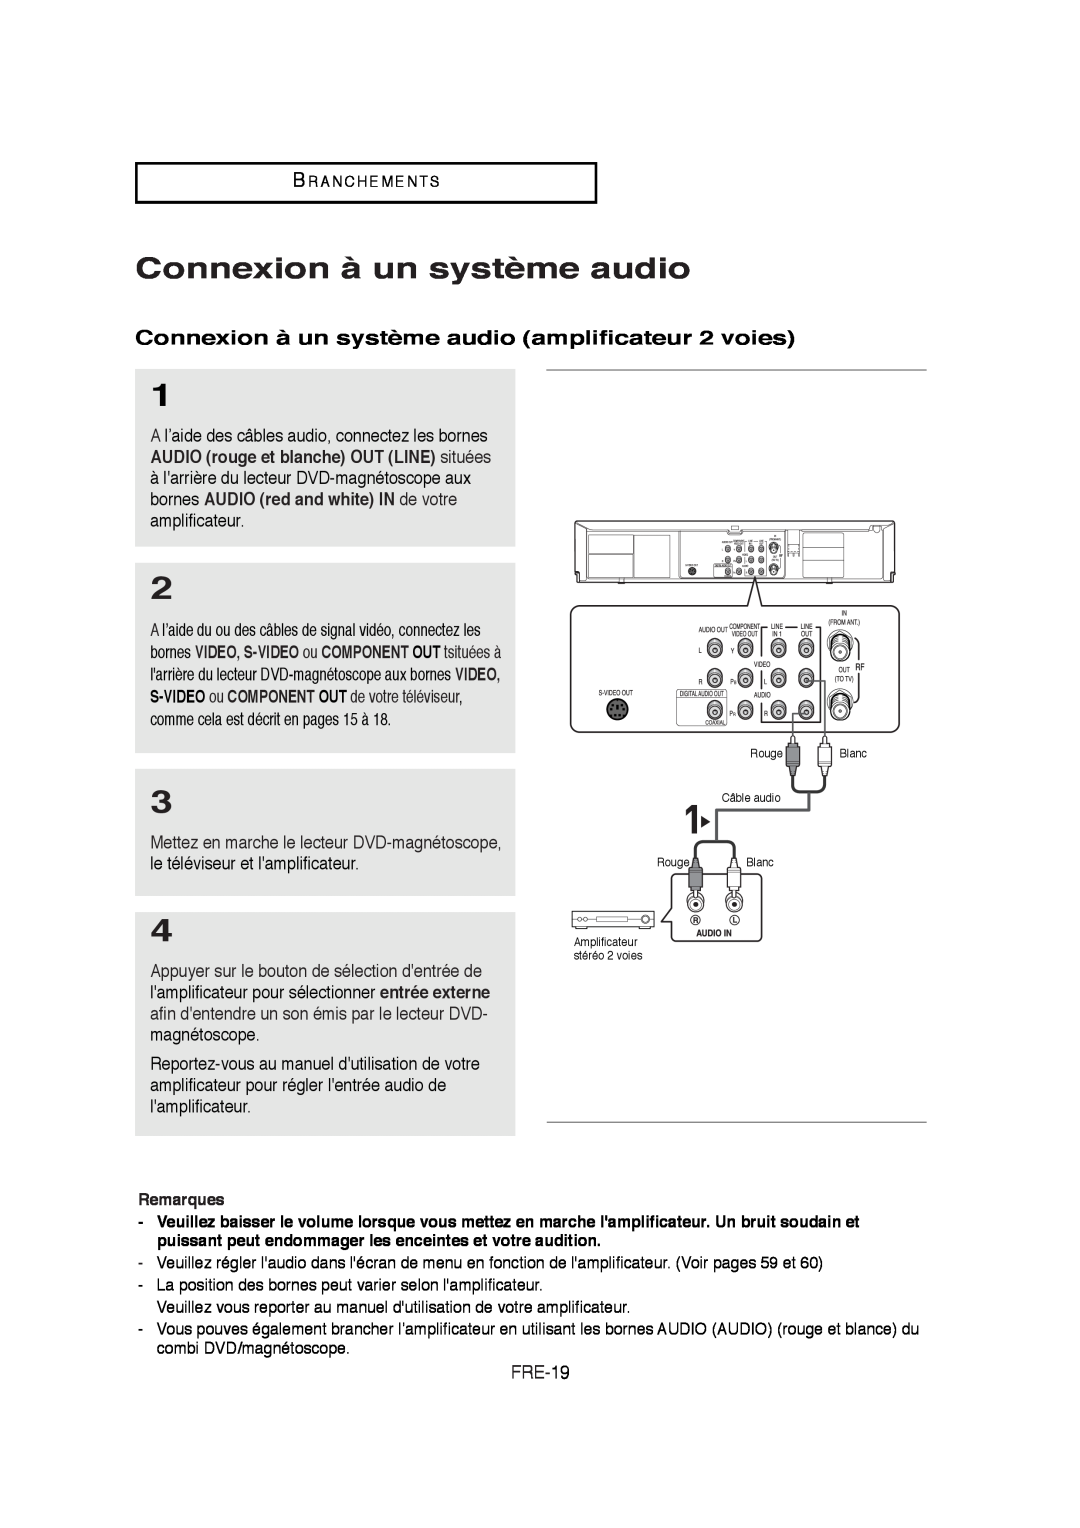 Samsung 20070205090323359, V6700-XAC, AK68-01304A instruction manual Connexion à un système audio amplificateur 2 voies 